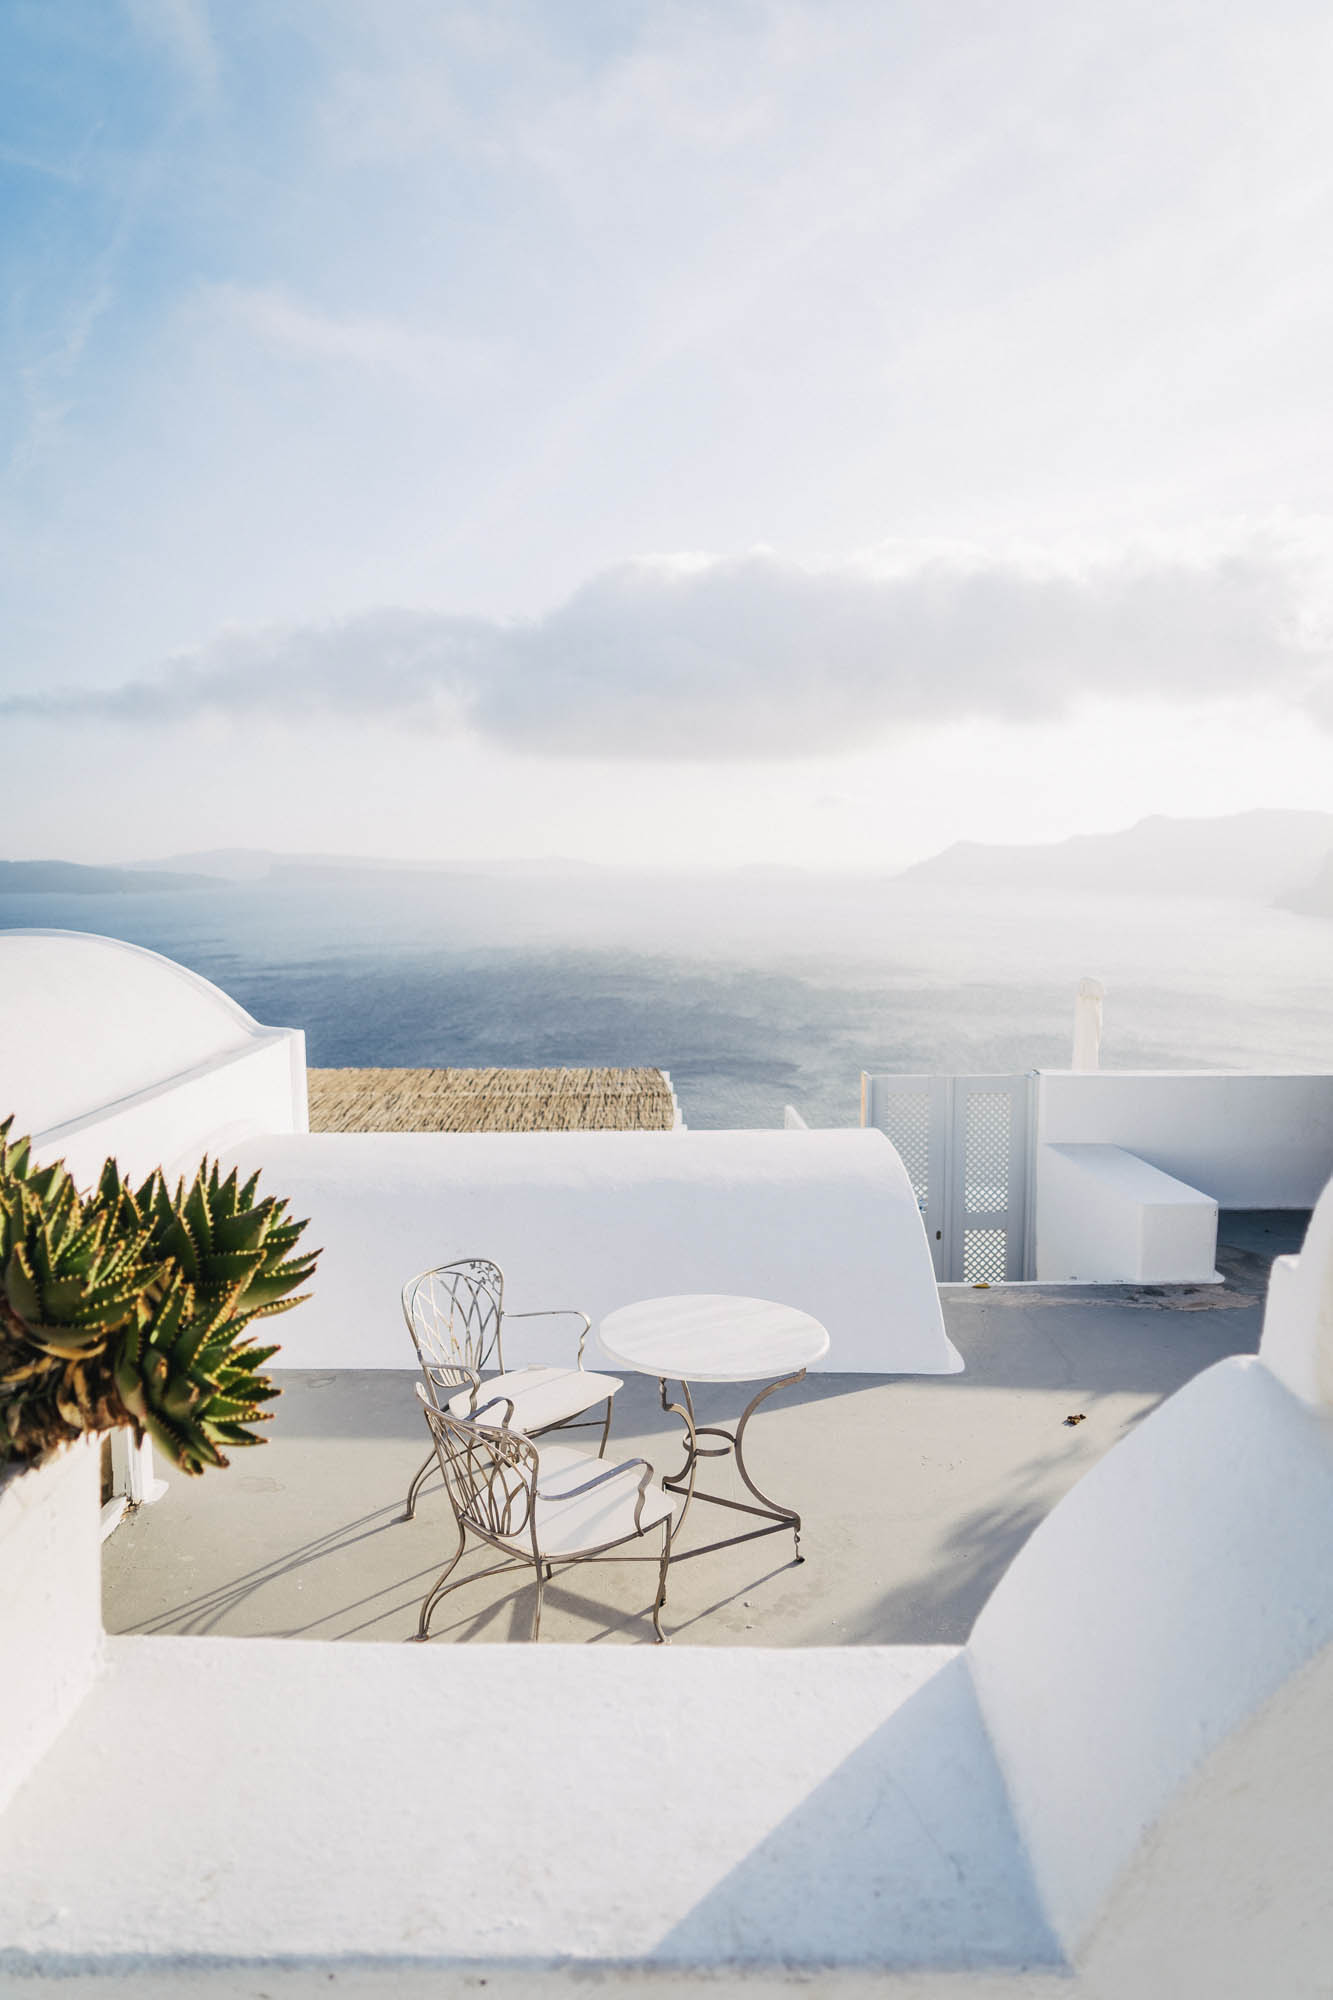 grecki widok białymi budynkami i pięknym stolikiem, zachęca do wypicia kawy